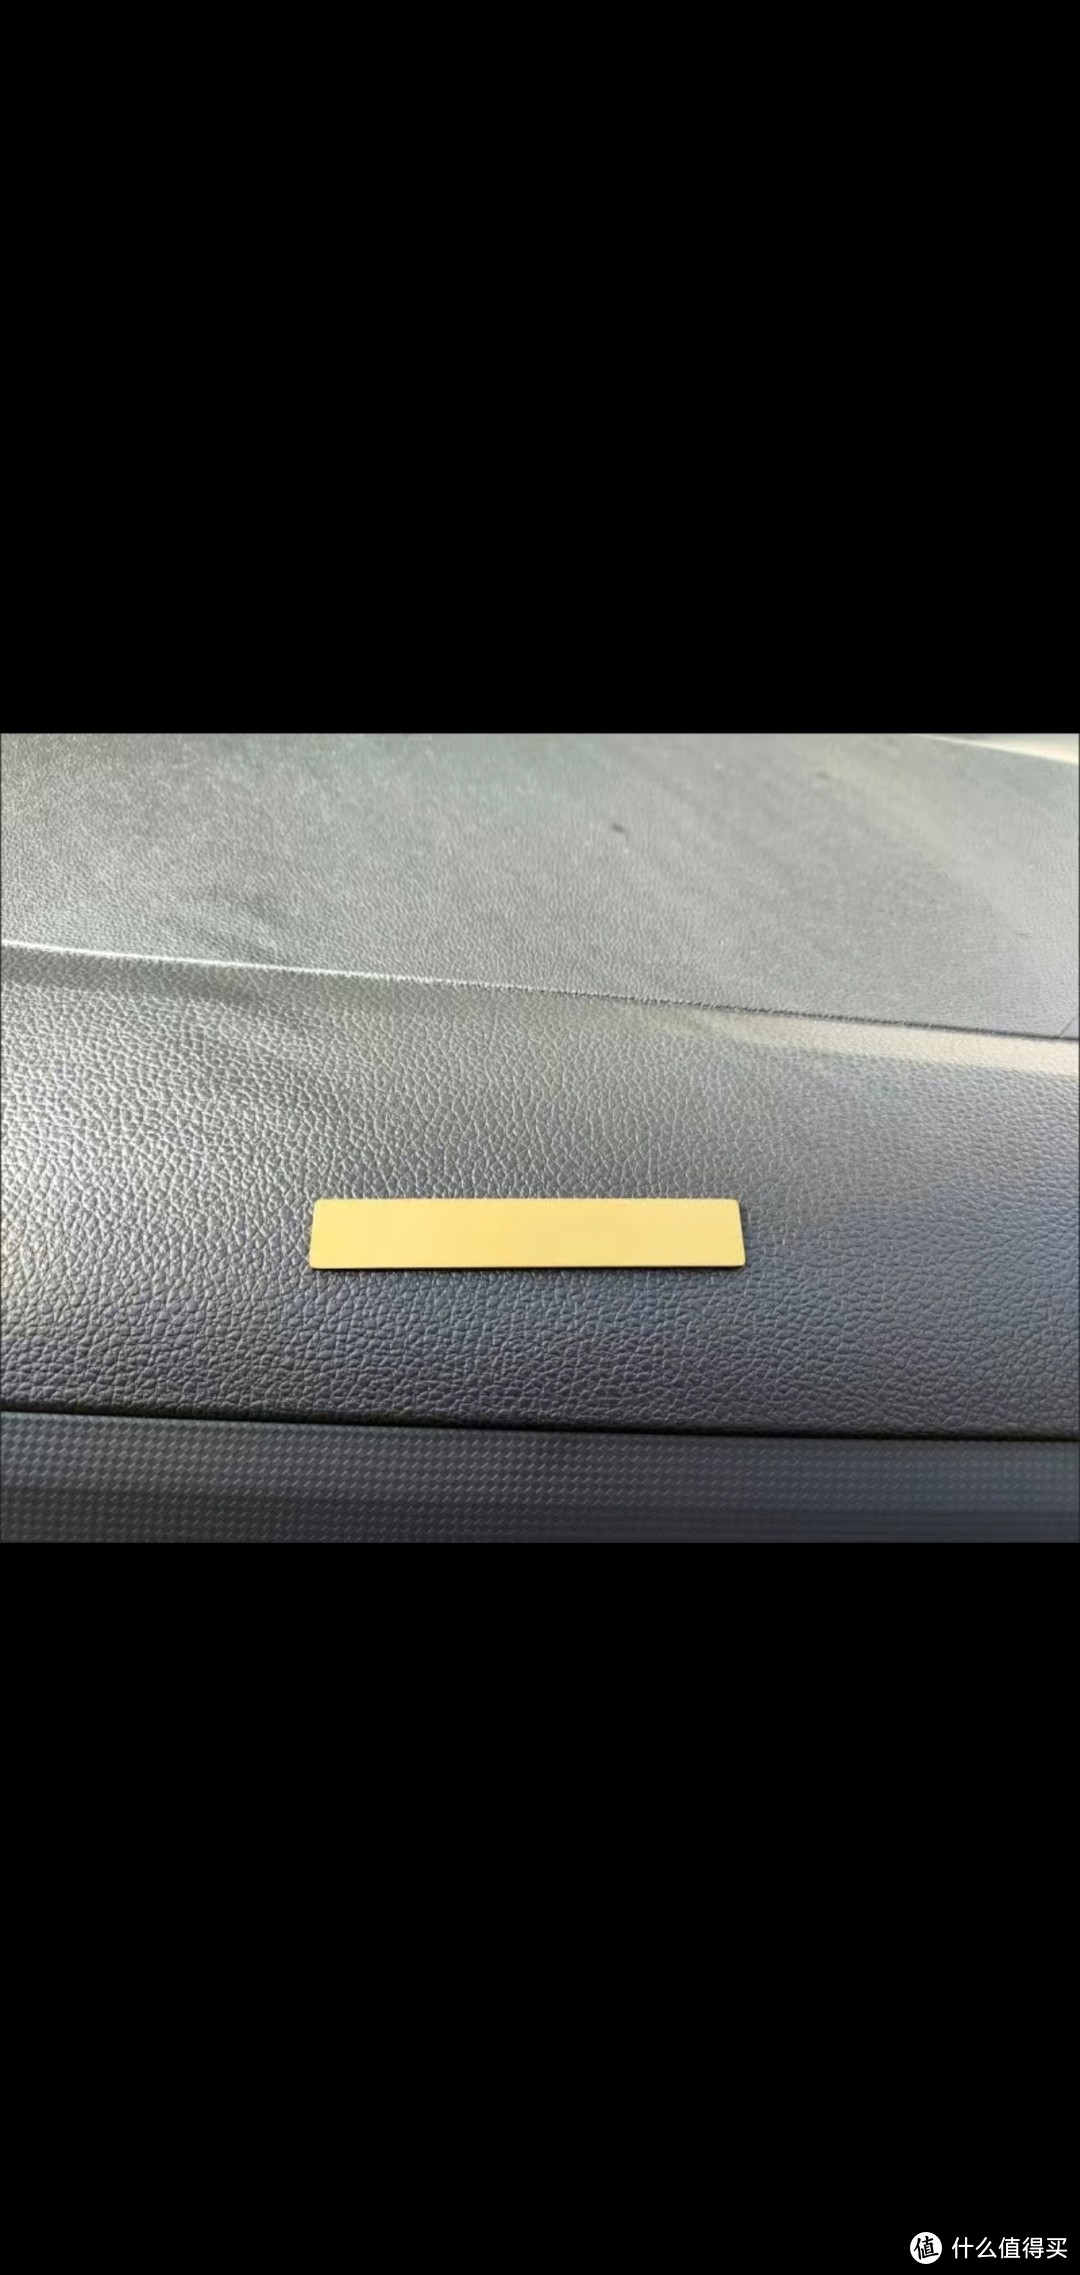 黄铜停车号码牌是一种高档实用的临时停车工具